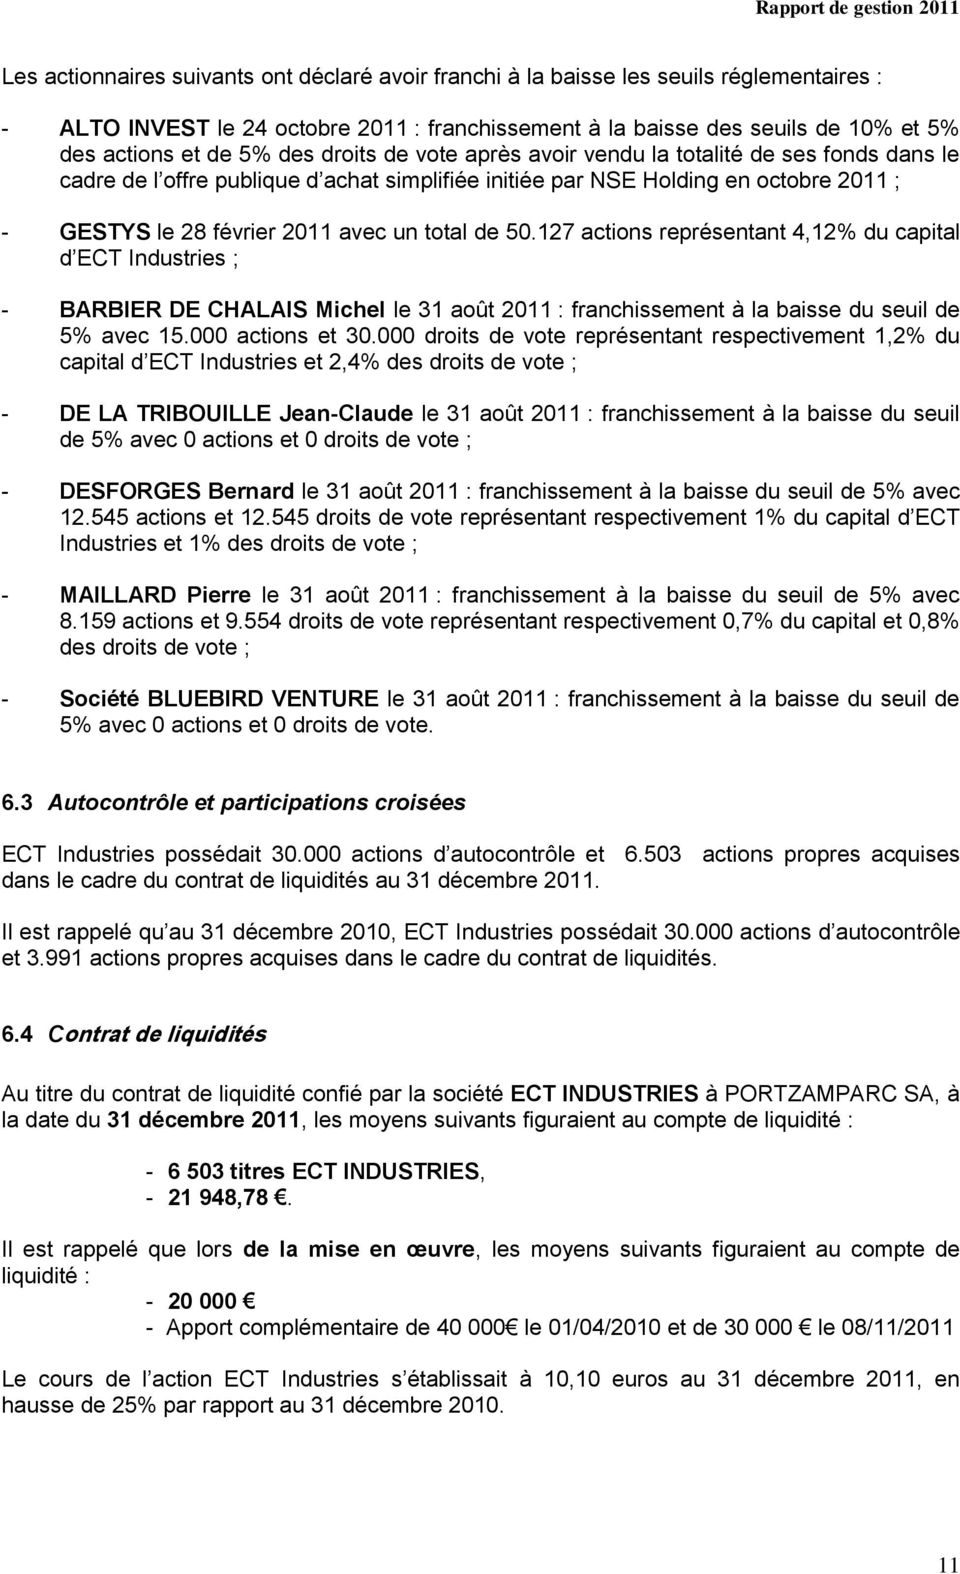 de 50.127 actions représentant 4,12% du capital d ECT Industries ; - BARBIER DE CHALAIS Michel le 31 août 2011 : franchissement à la baisse du seuil de 5% avec 15.000 actions et 30.